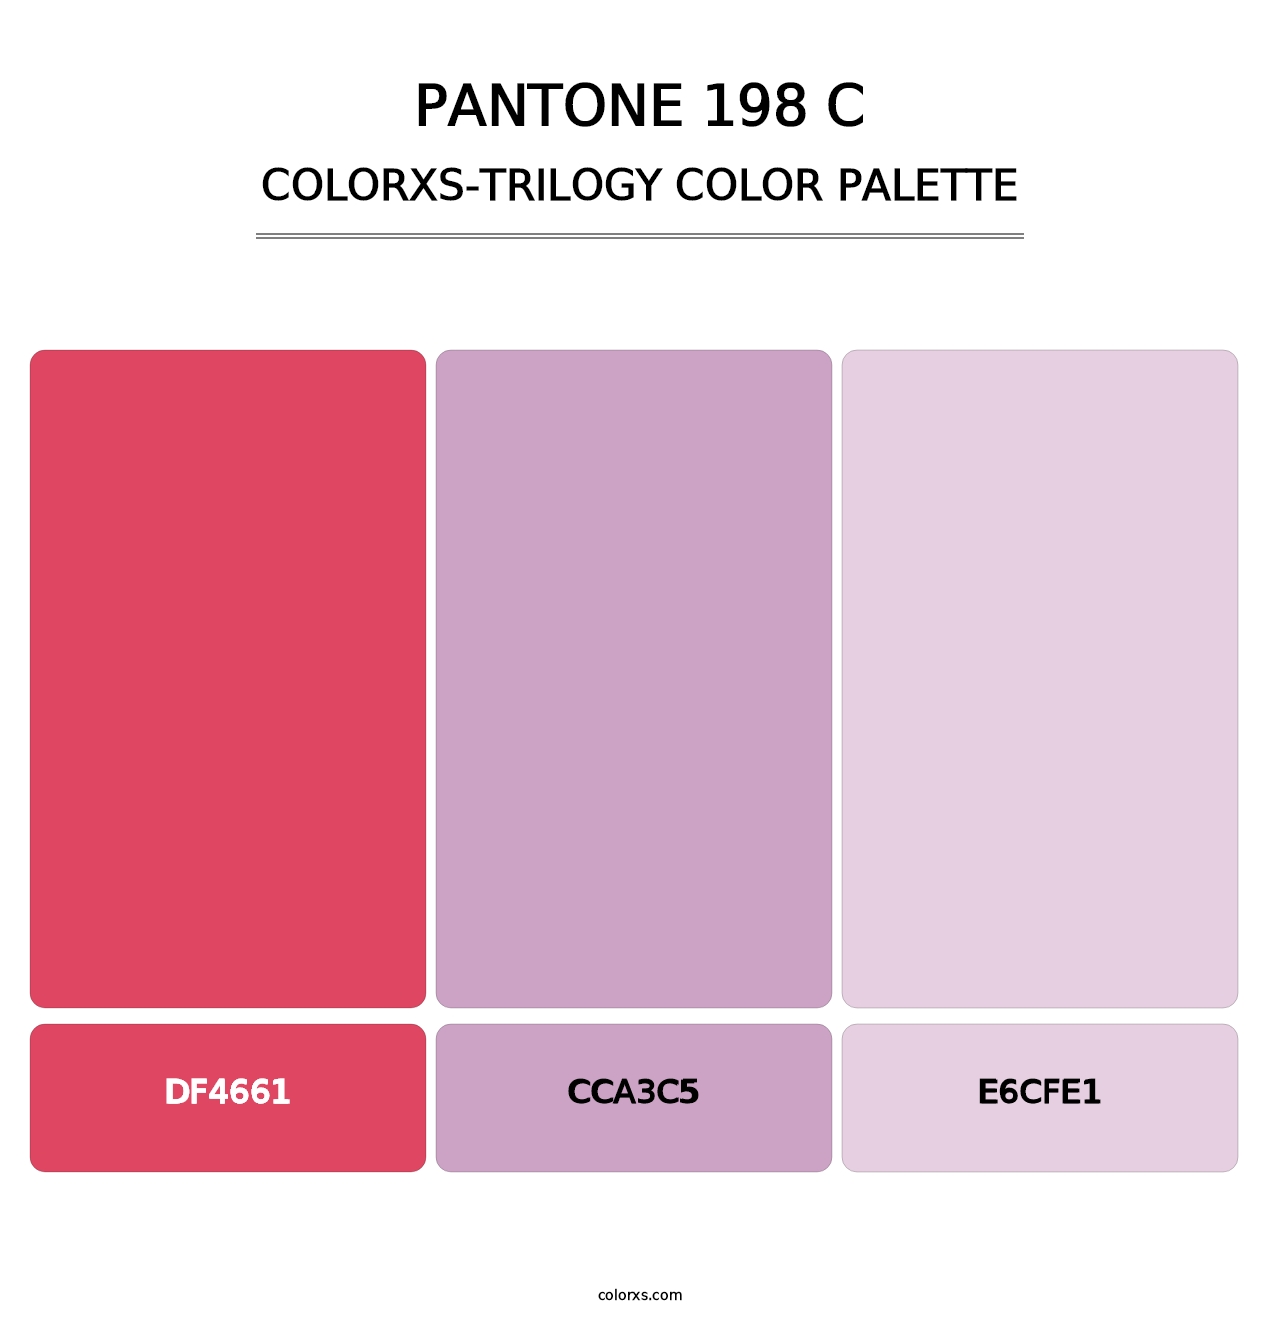 PANTONE 198 C - Colorxs Trilogy Palette